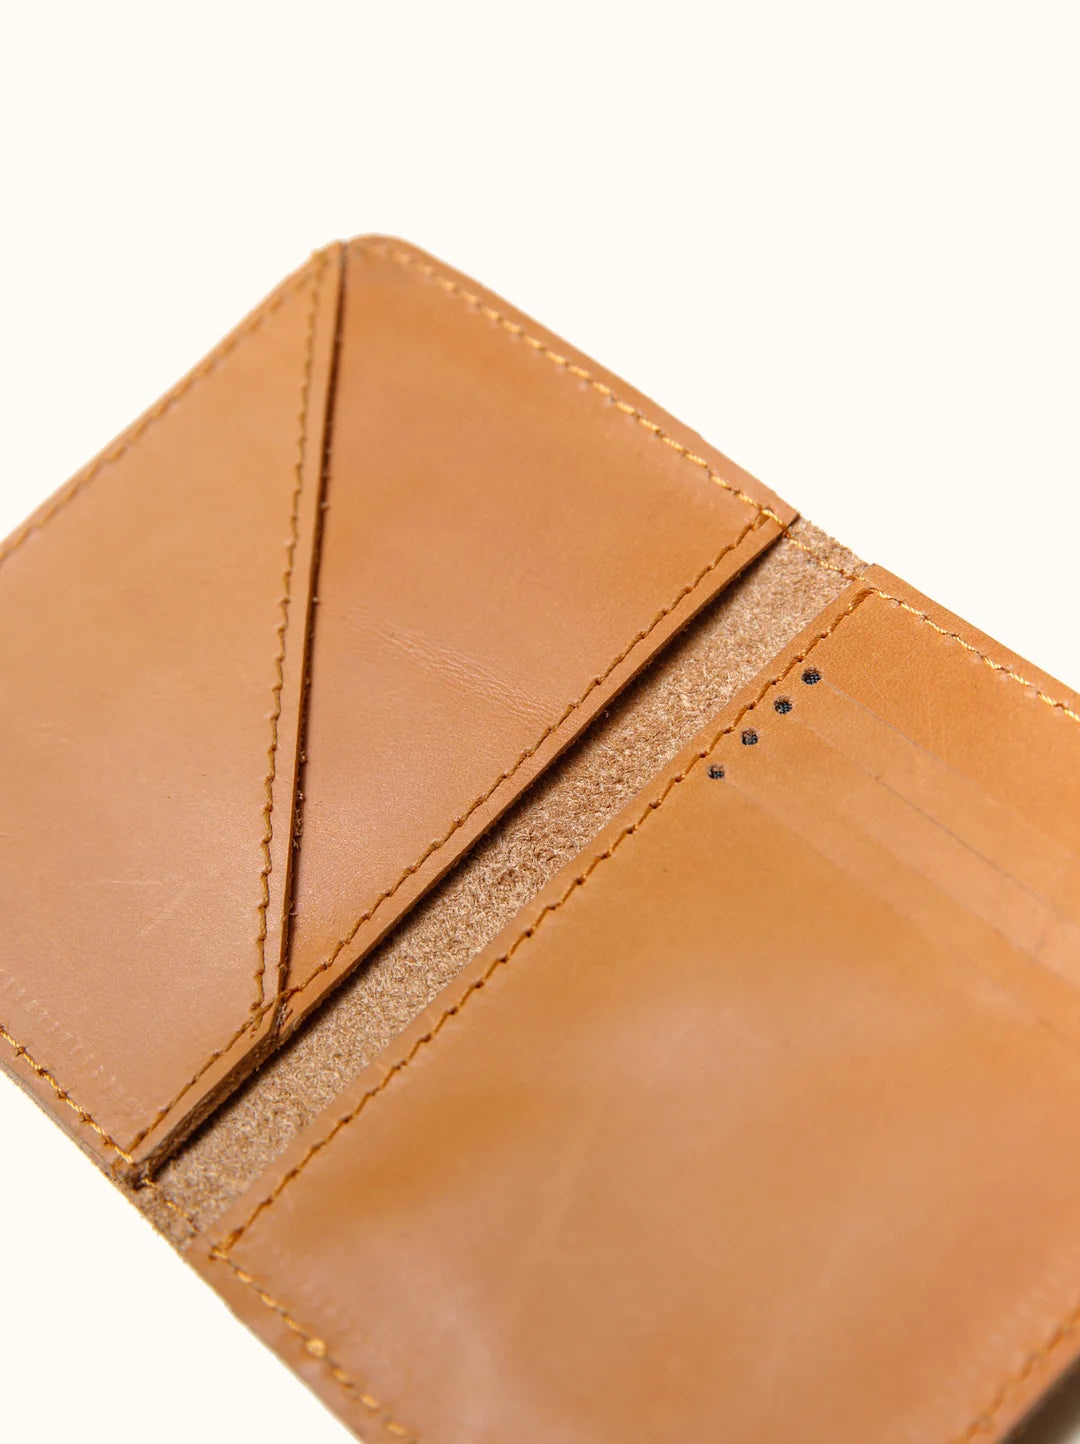 Freddie Leather Card Wallet